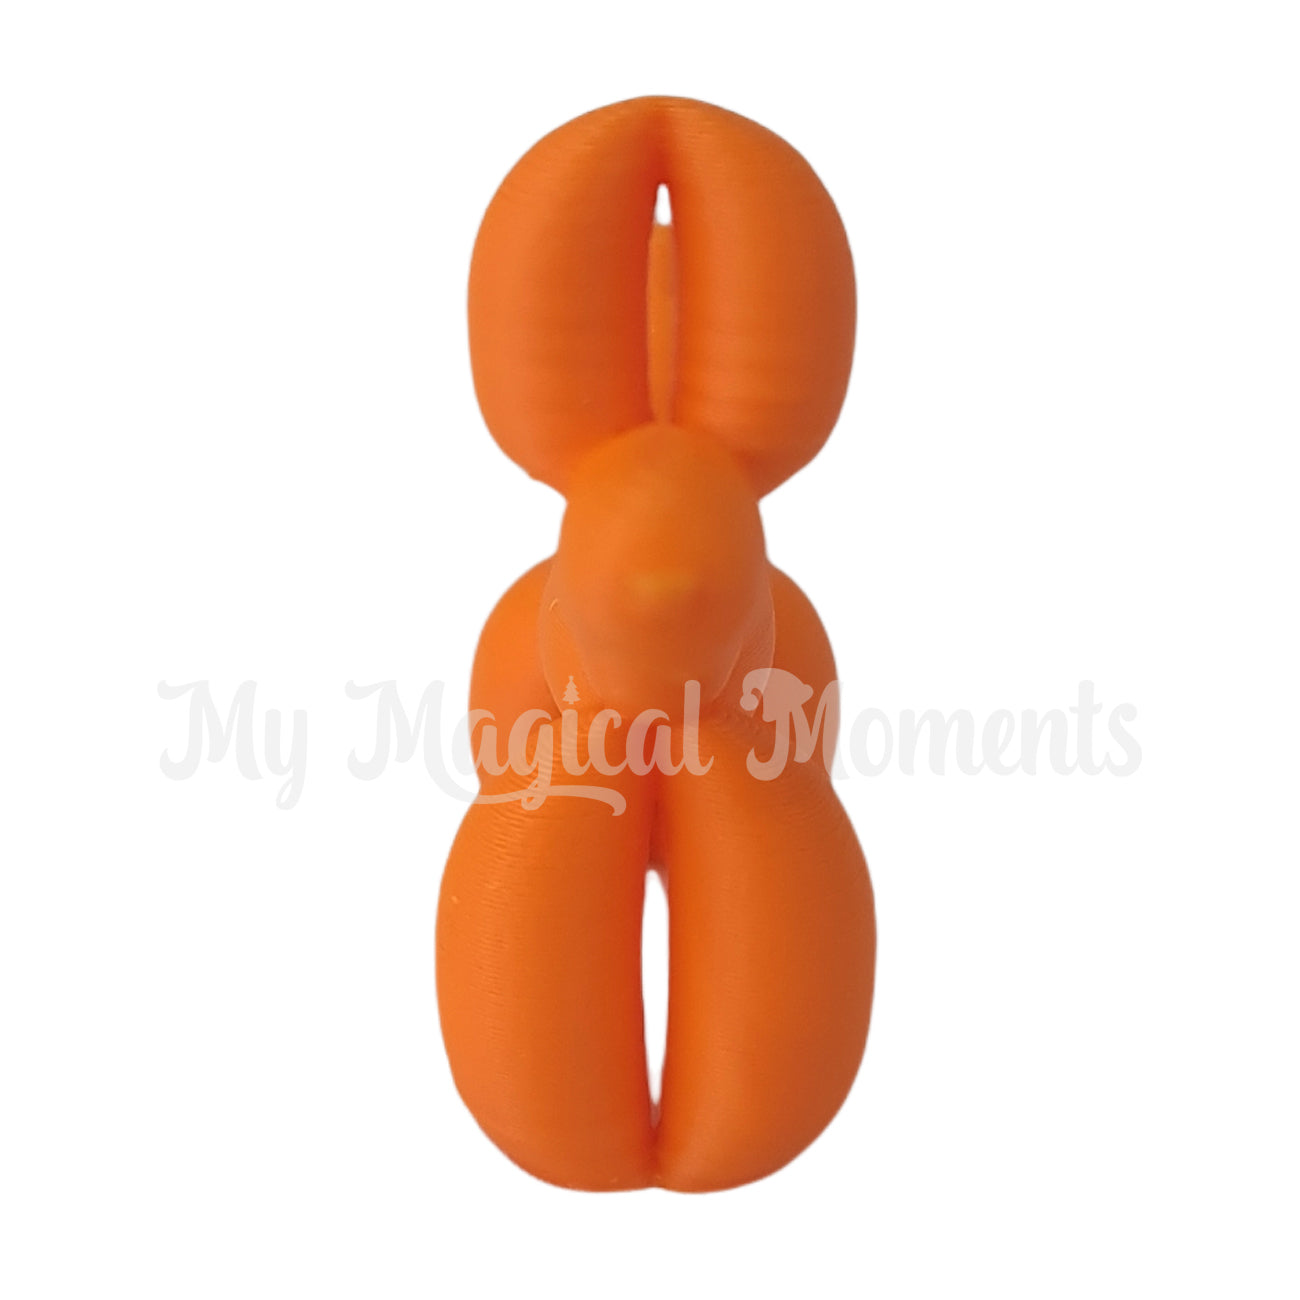 Miniature orange balloon animal